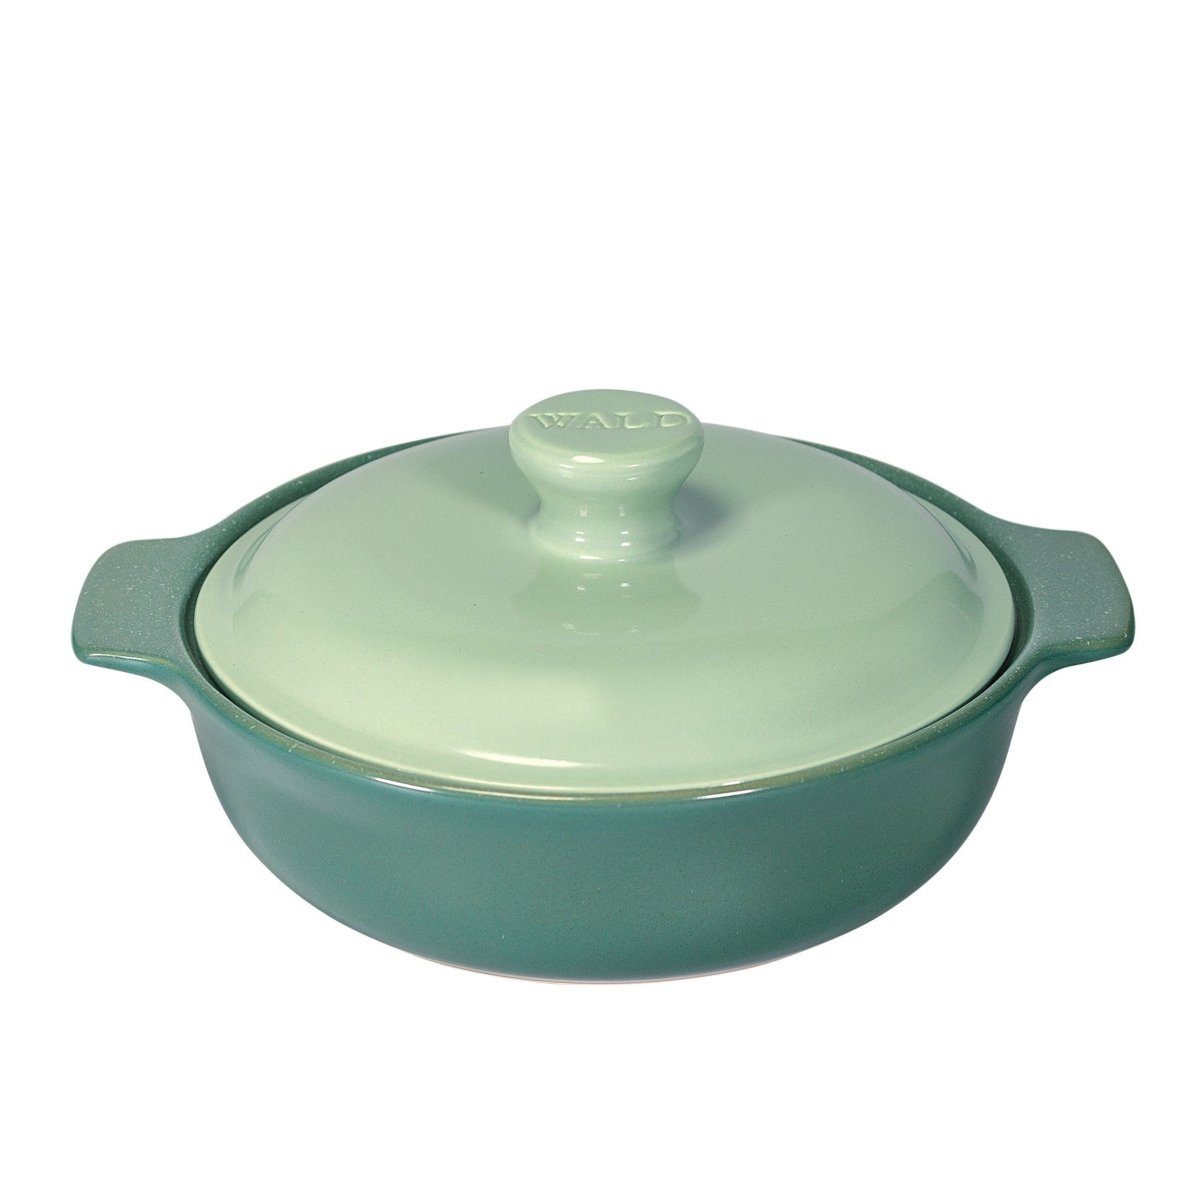 WALD Kochtopf Keramik-Kochtopf IND groß grün | Suppentöpfe